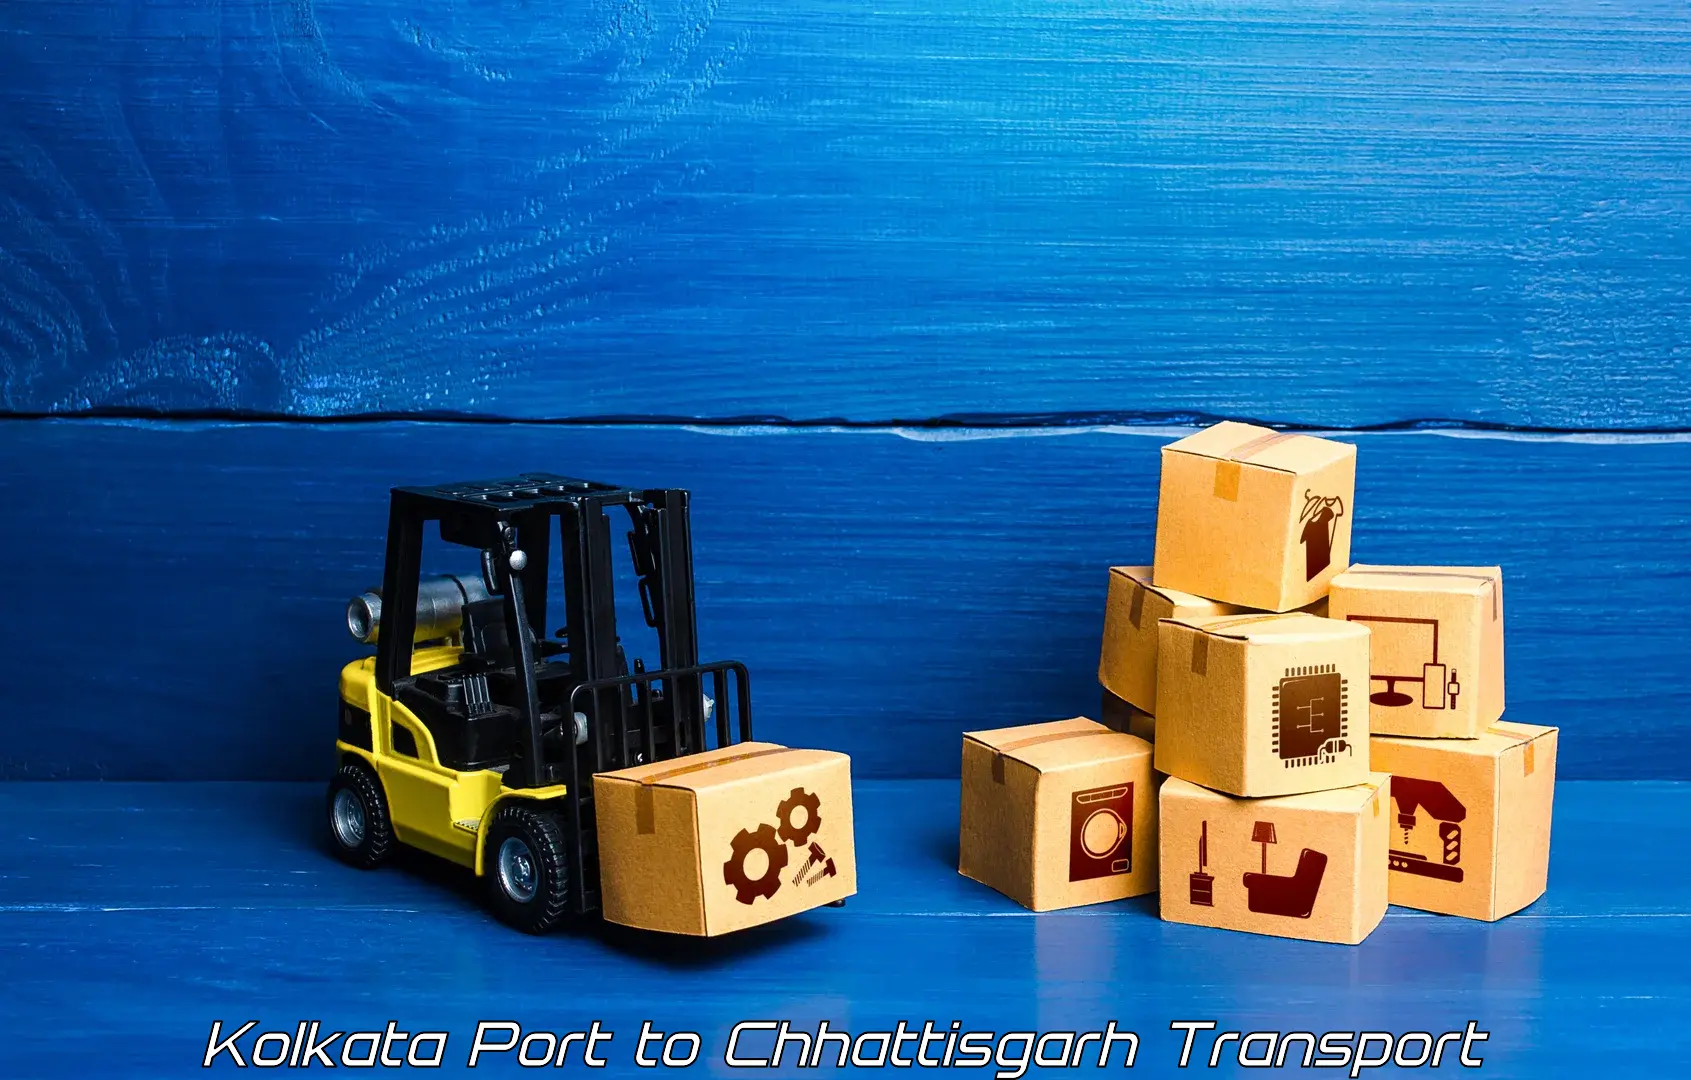 Vehicle transport services Kolkata Port to Korea Chhattisgarh